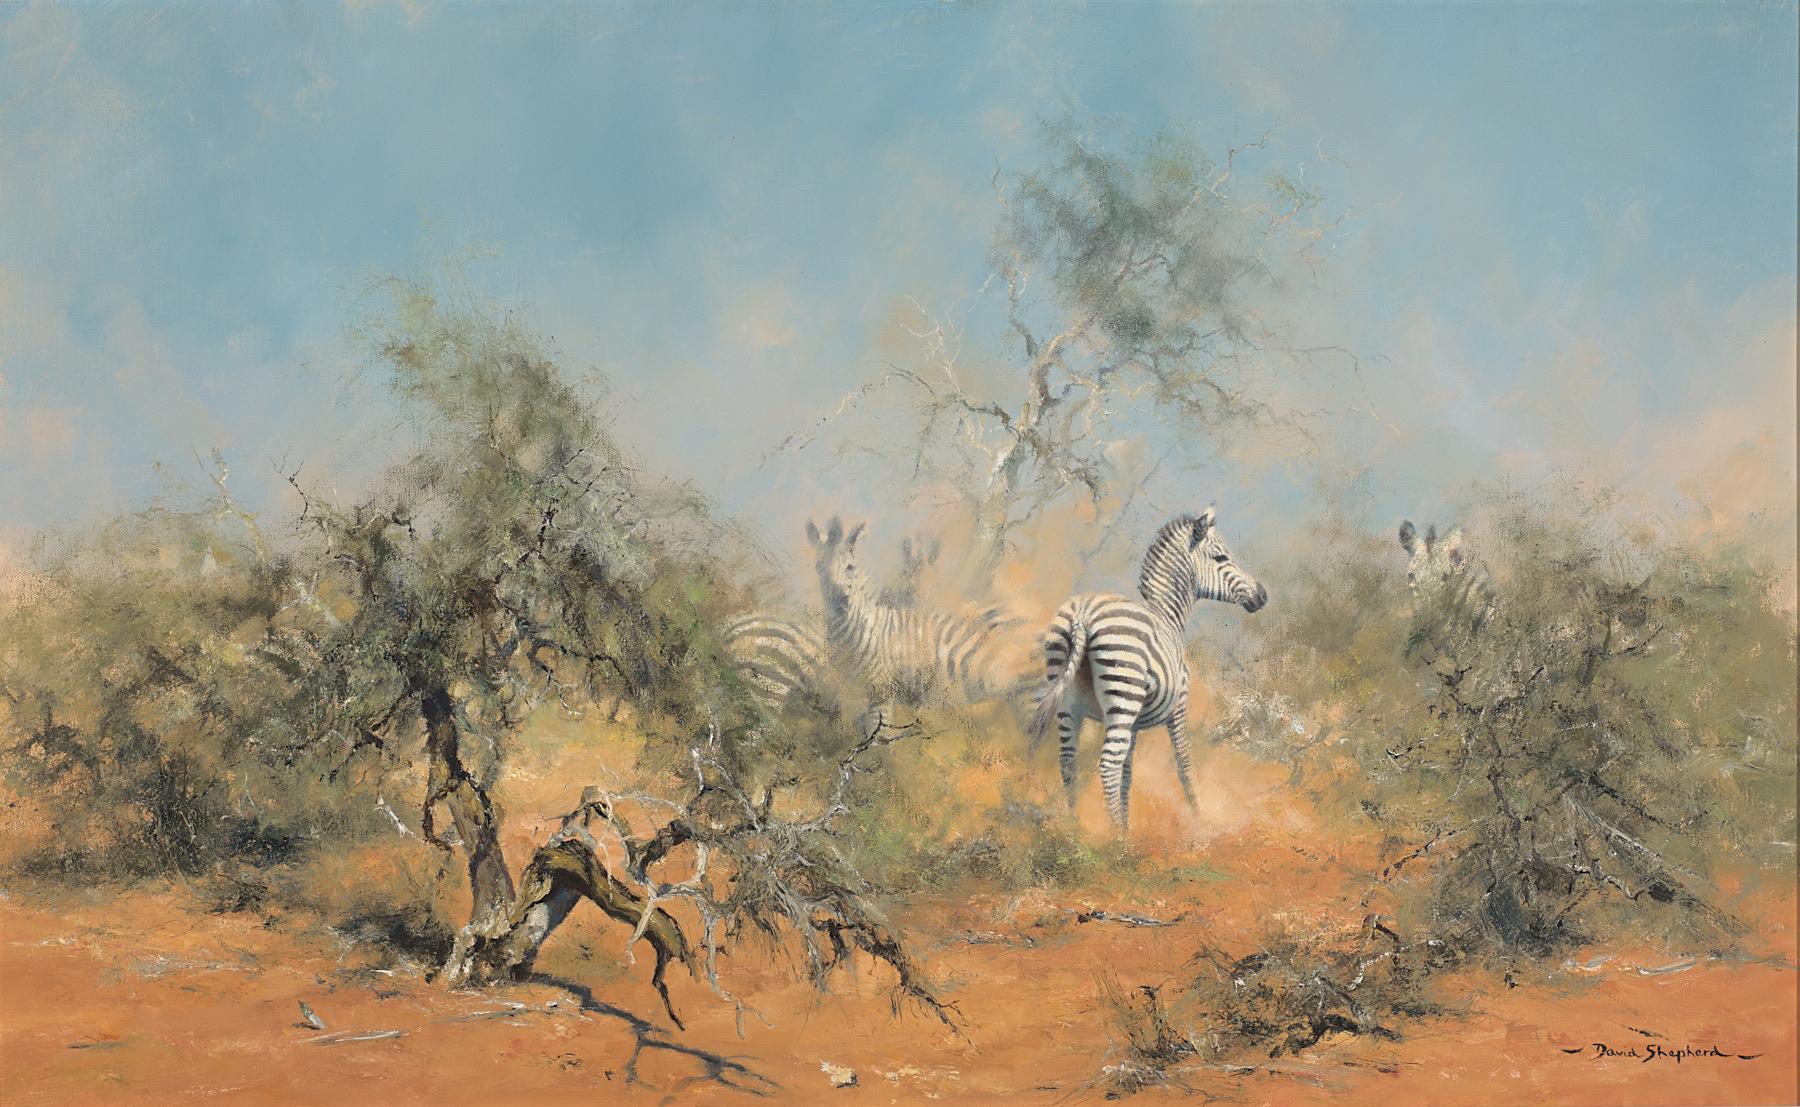 David Shepherd | Zebras in the Brush